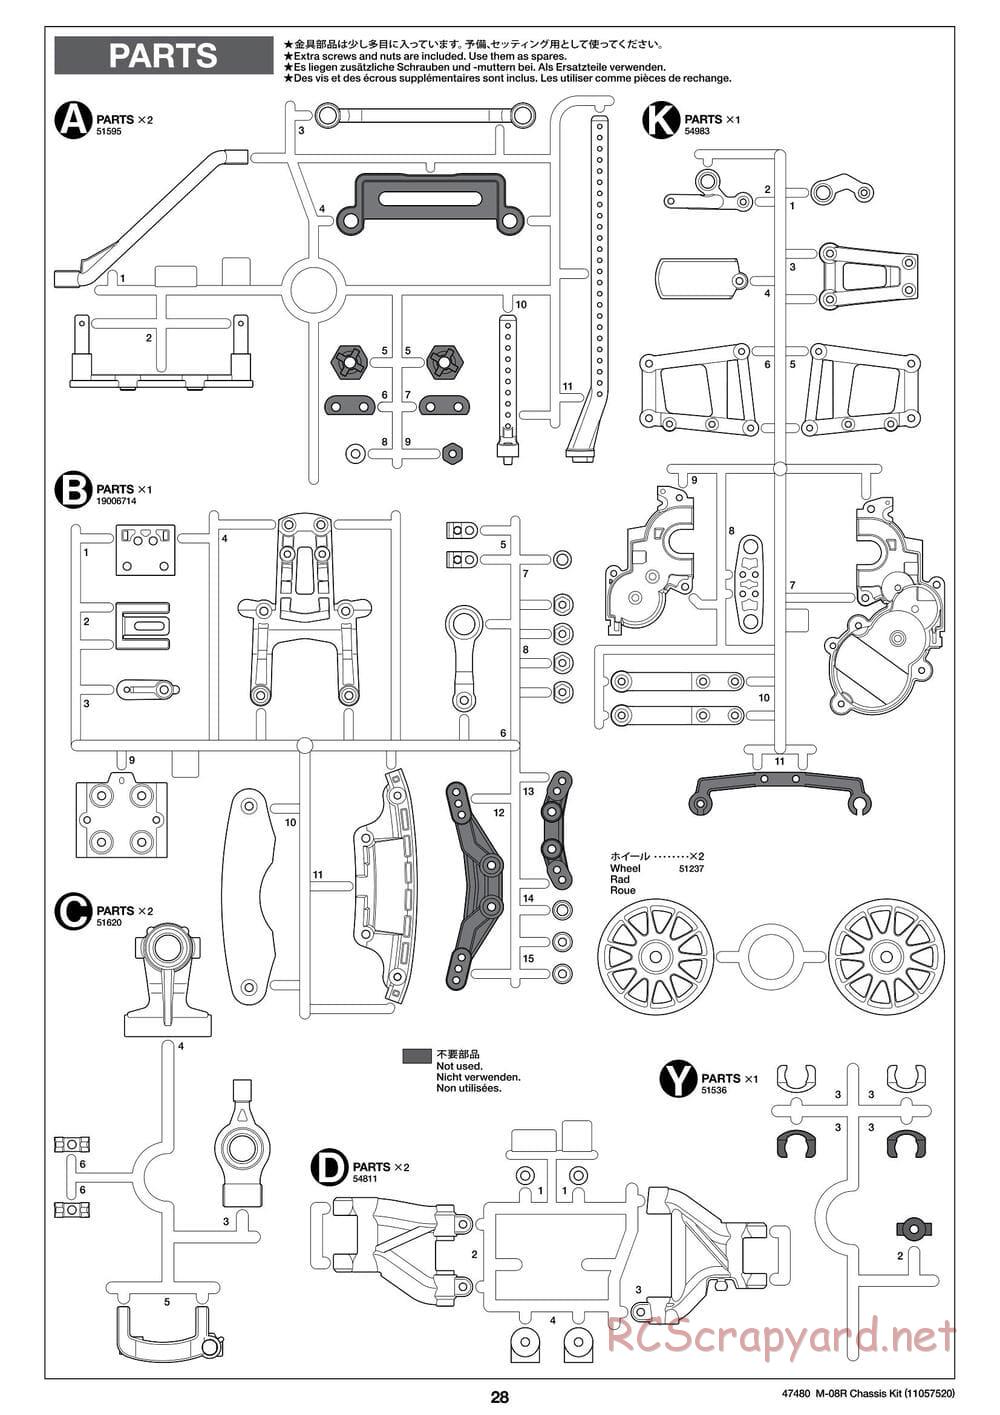 Tamiya - M-08R Chassis - Manual - Page 28